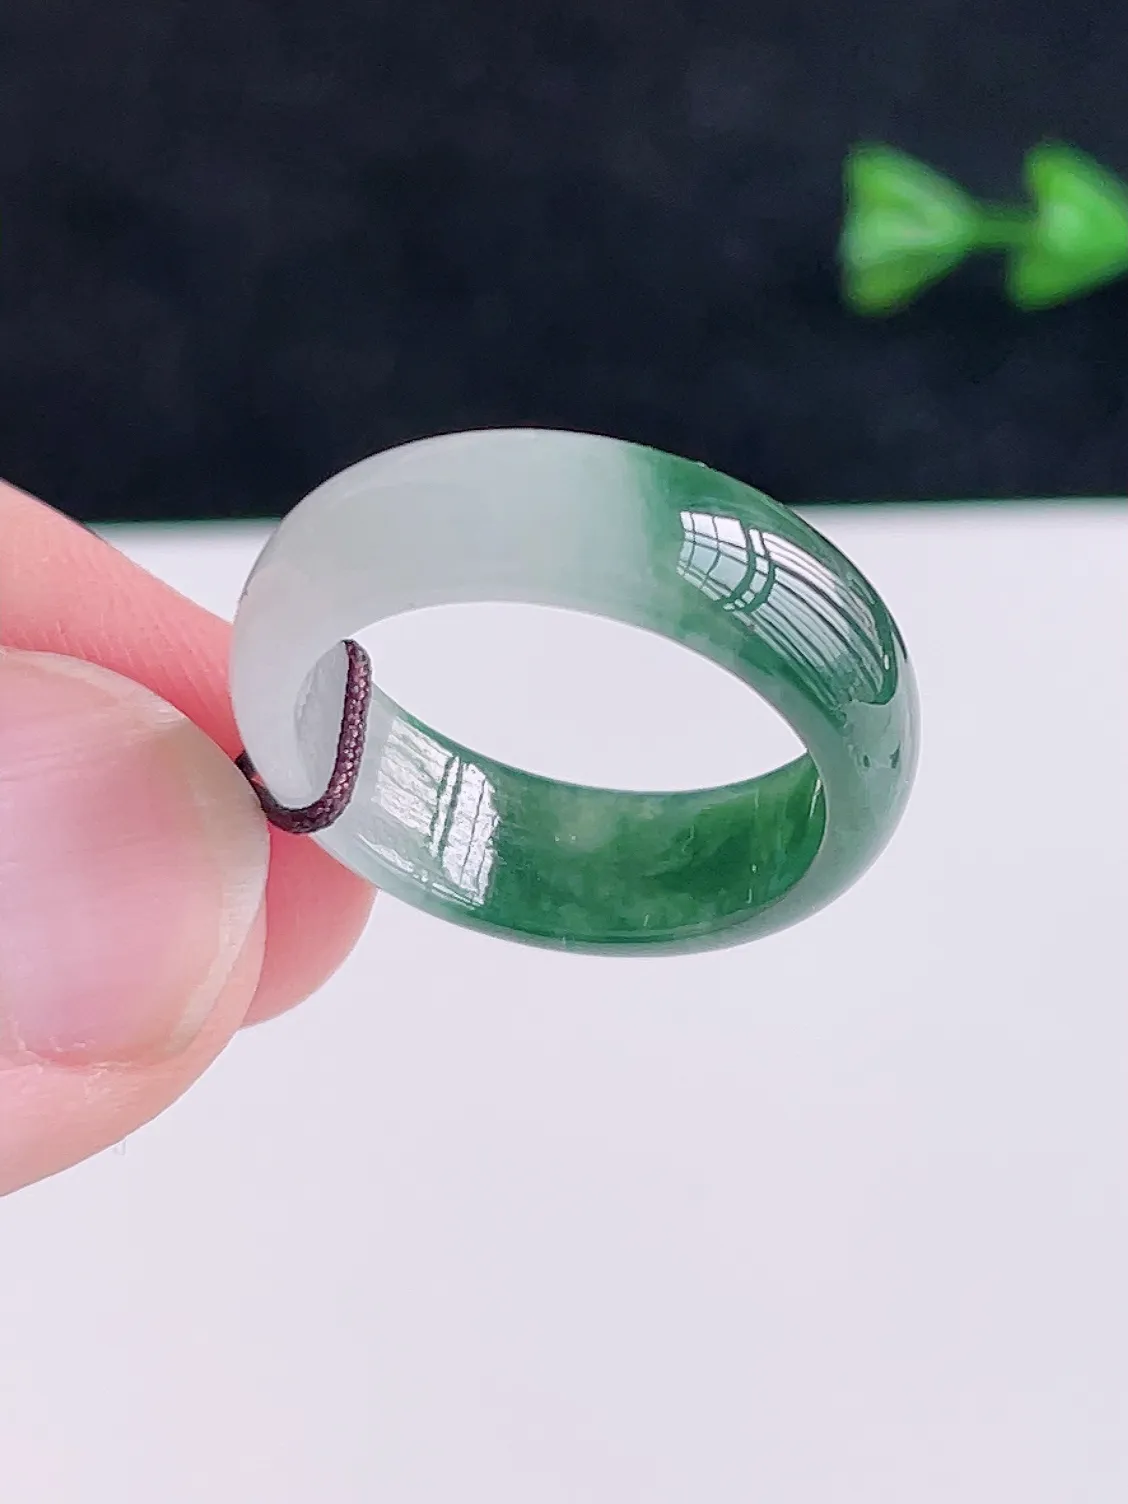 A货翡翠冰润绿色翡翠戒指  颜色清新 半山半水 艳丽漂亮，佩戴优雅大方，AK0109   （请在自然光欣赏）尺寸18.5-7-2.8mm  19号